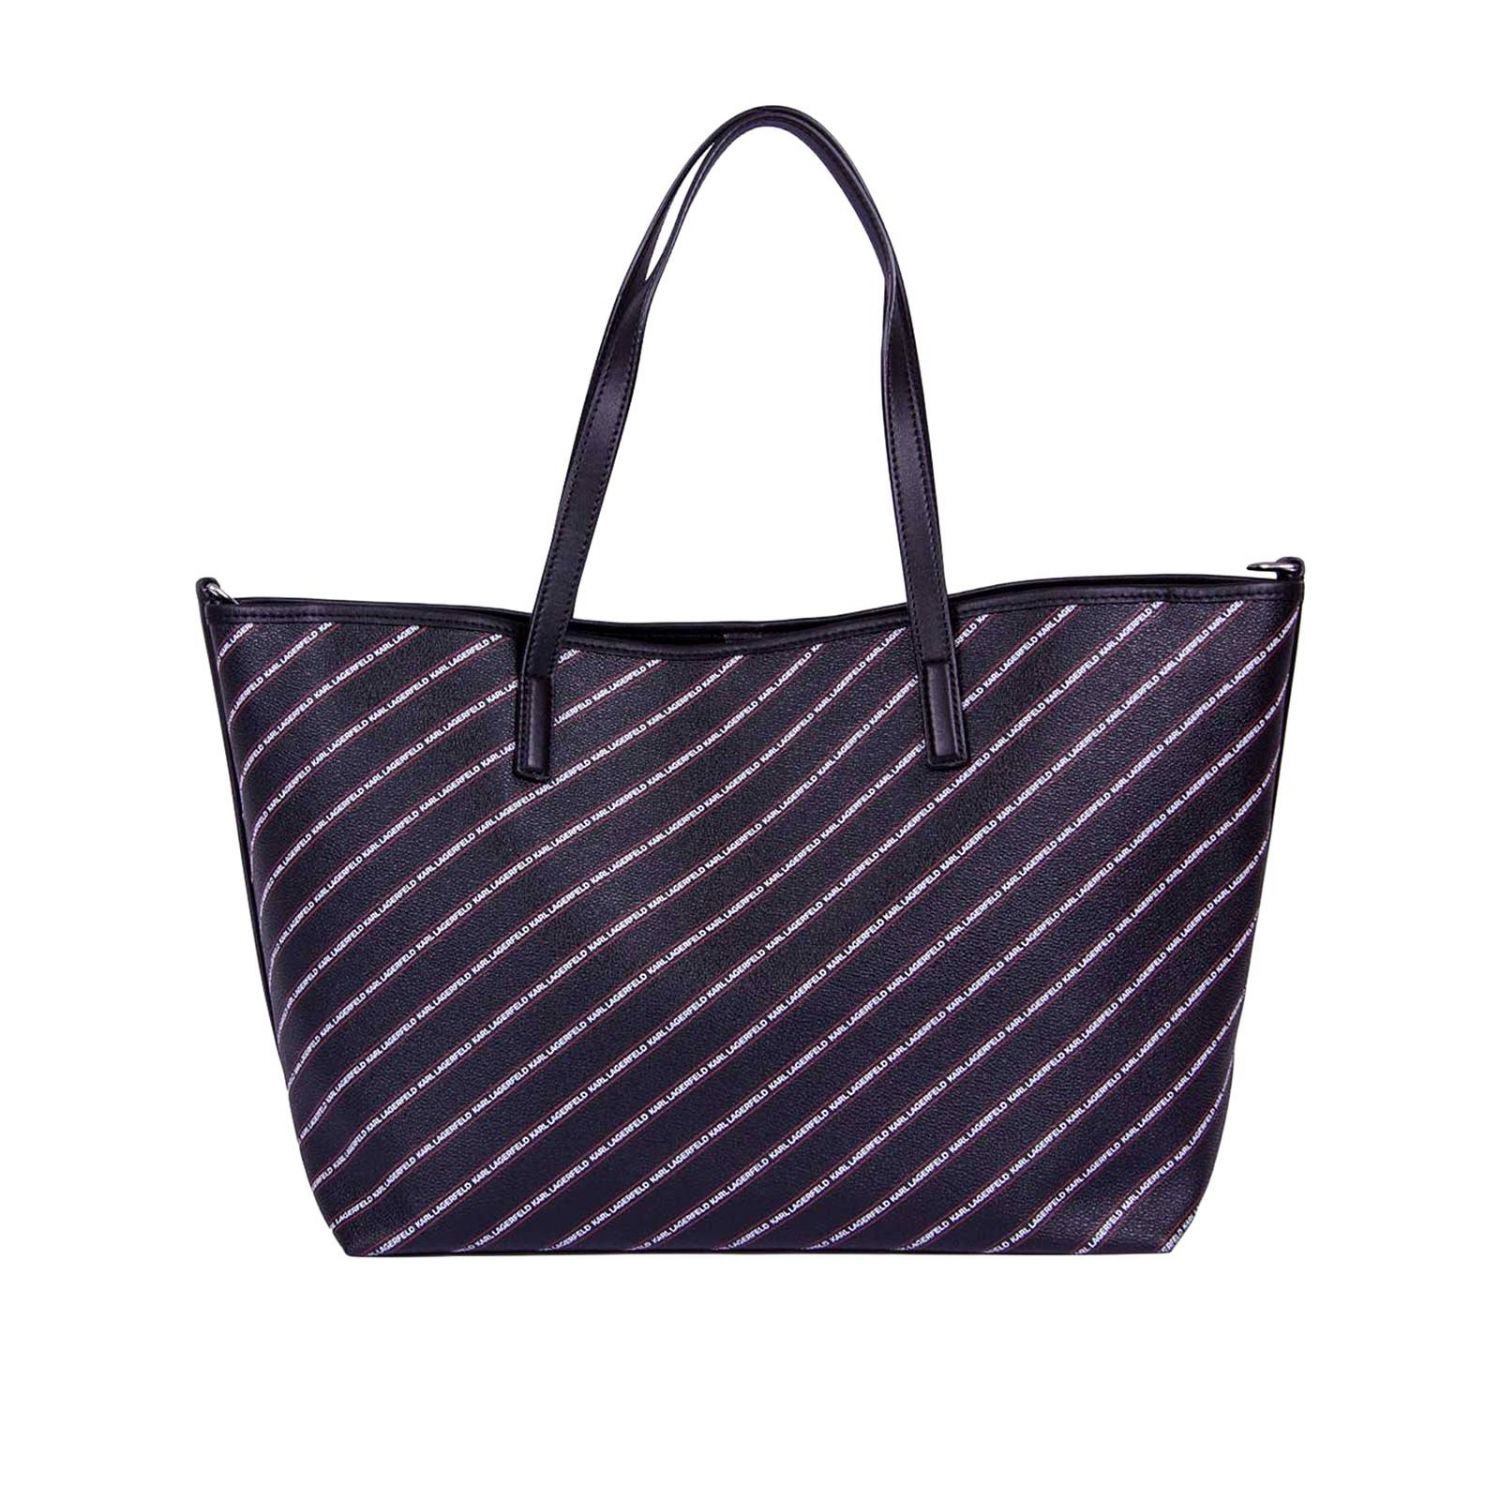 Karl Lagerfeld Outlet: Handbag women - Black | Handbag Karl Lagerfeld ...